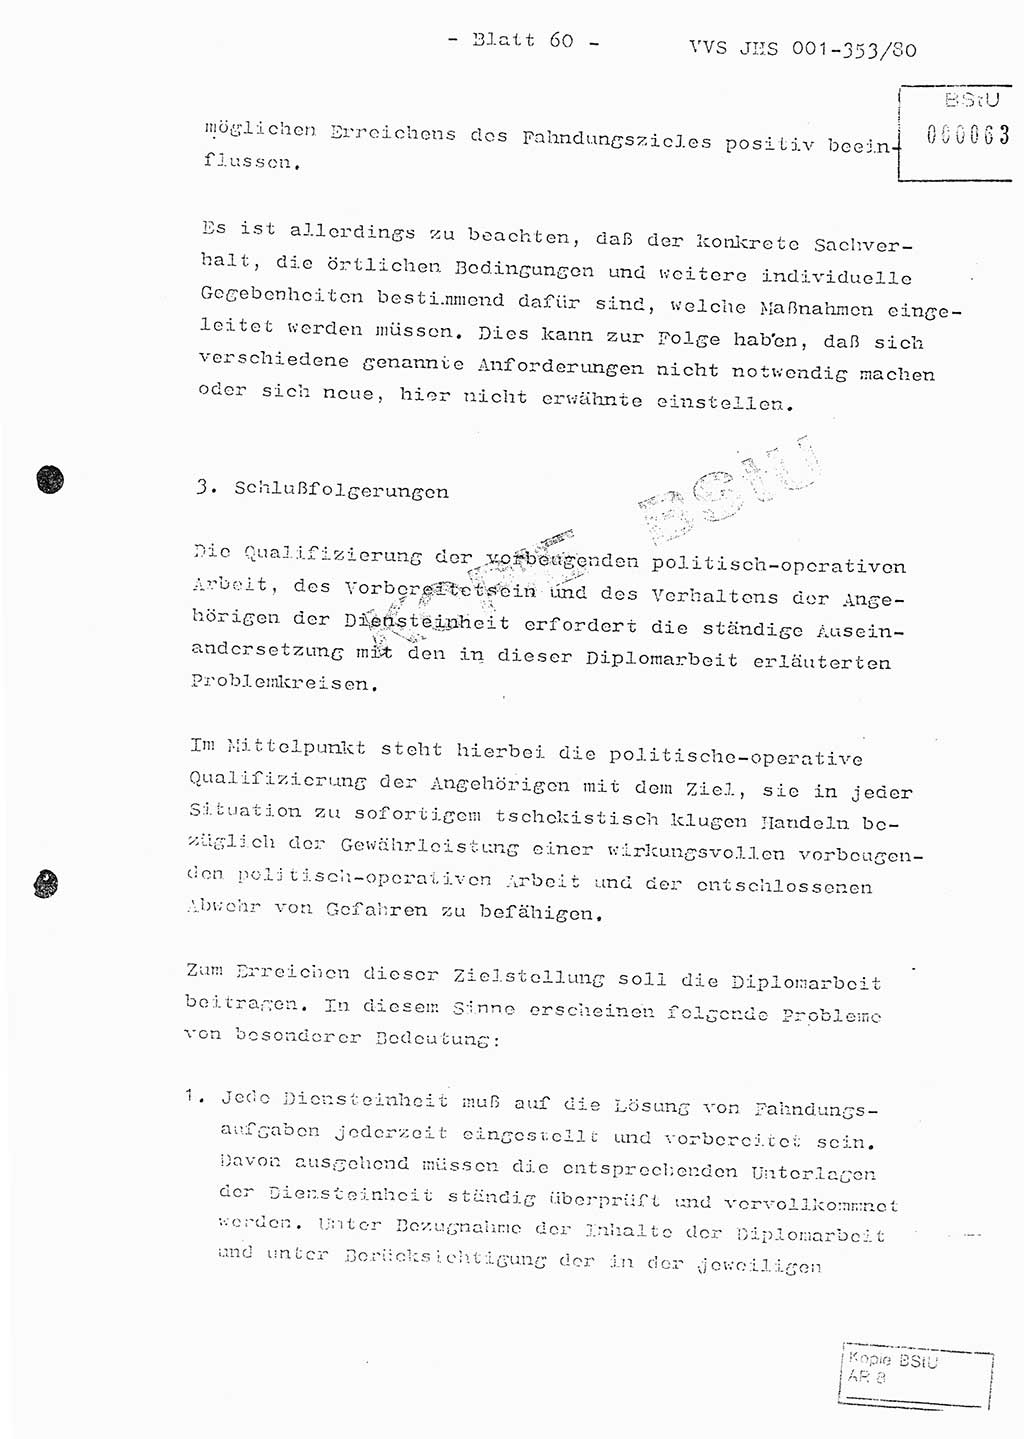 Diplomarbeit Hauptmann Joachim Klaumünzner (Abt. ⅩⅣ), Ministerium für Staatssicherheit (MfS) [Deutsche Demokratische Republik (DDR)], Juristische Hochschule (JHS), Vertrauliche Verschlußsache (VVS) o001-353/80, Potsdam 1980, Blatt 60 (Dipl.-Arb. MfS DDR JHS VVS o001-353/80 1980, Bl. 60)